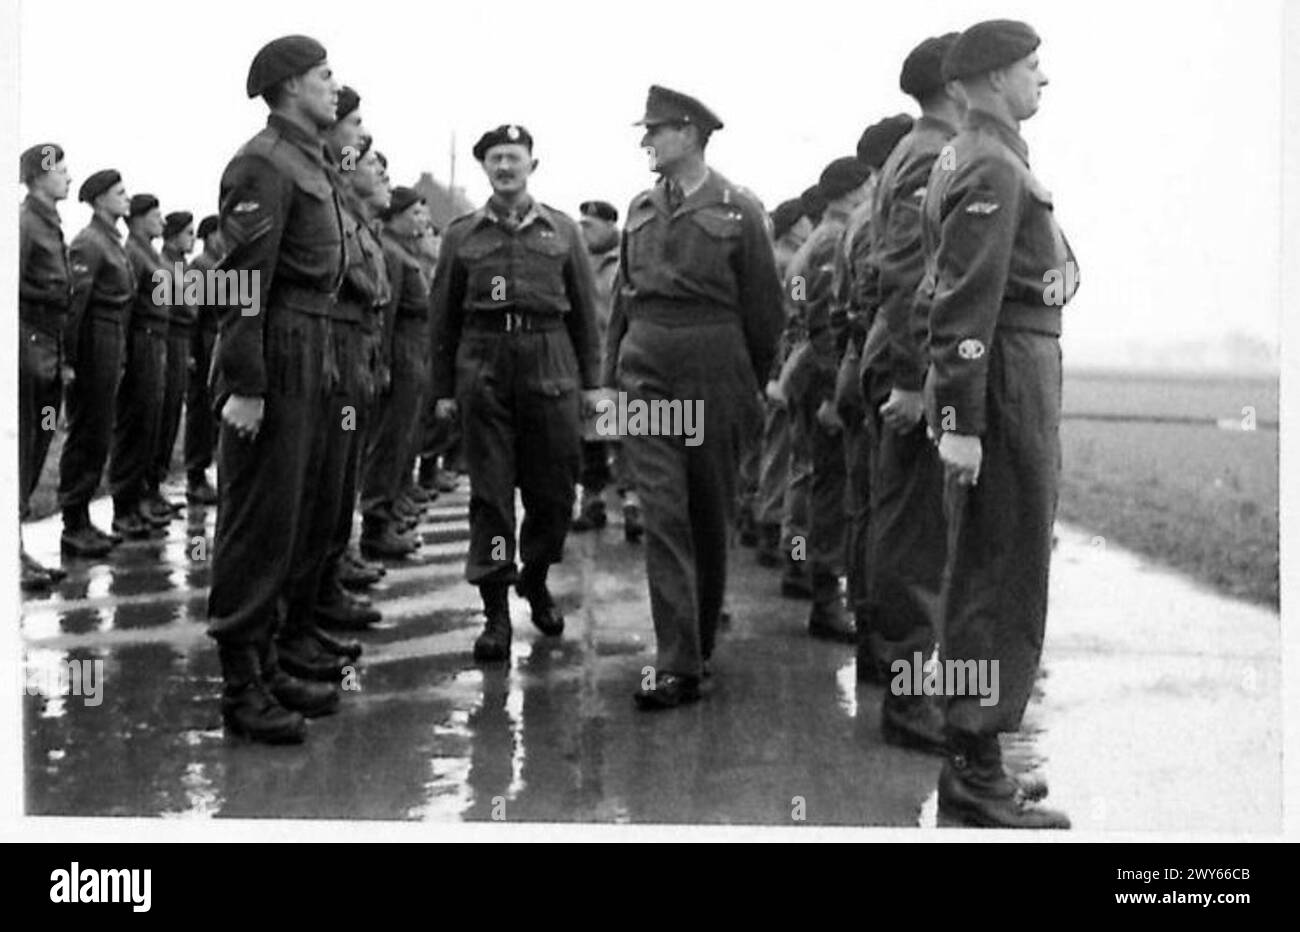 144TH ROYAL ARMORED CORPS GREAT DAY - il generale ispezionava lo Squadrone 'A', il maggiore R Reid. , British Army, 21st Army Group Foto Stock